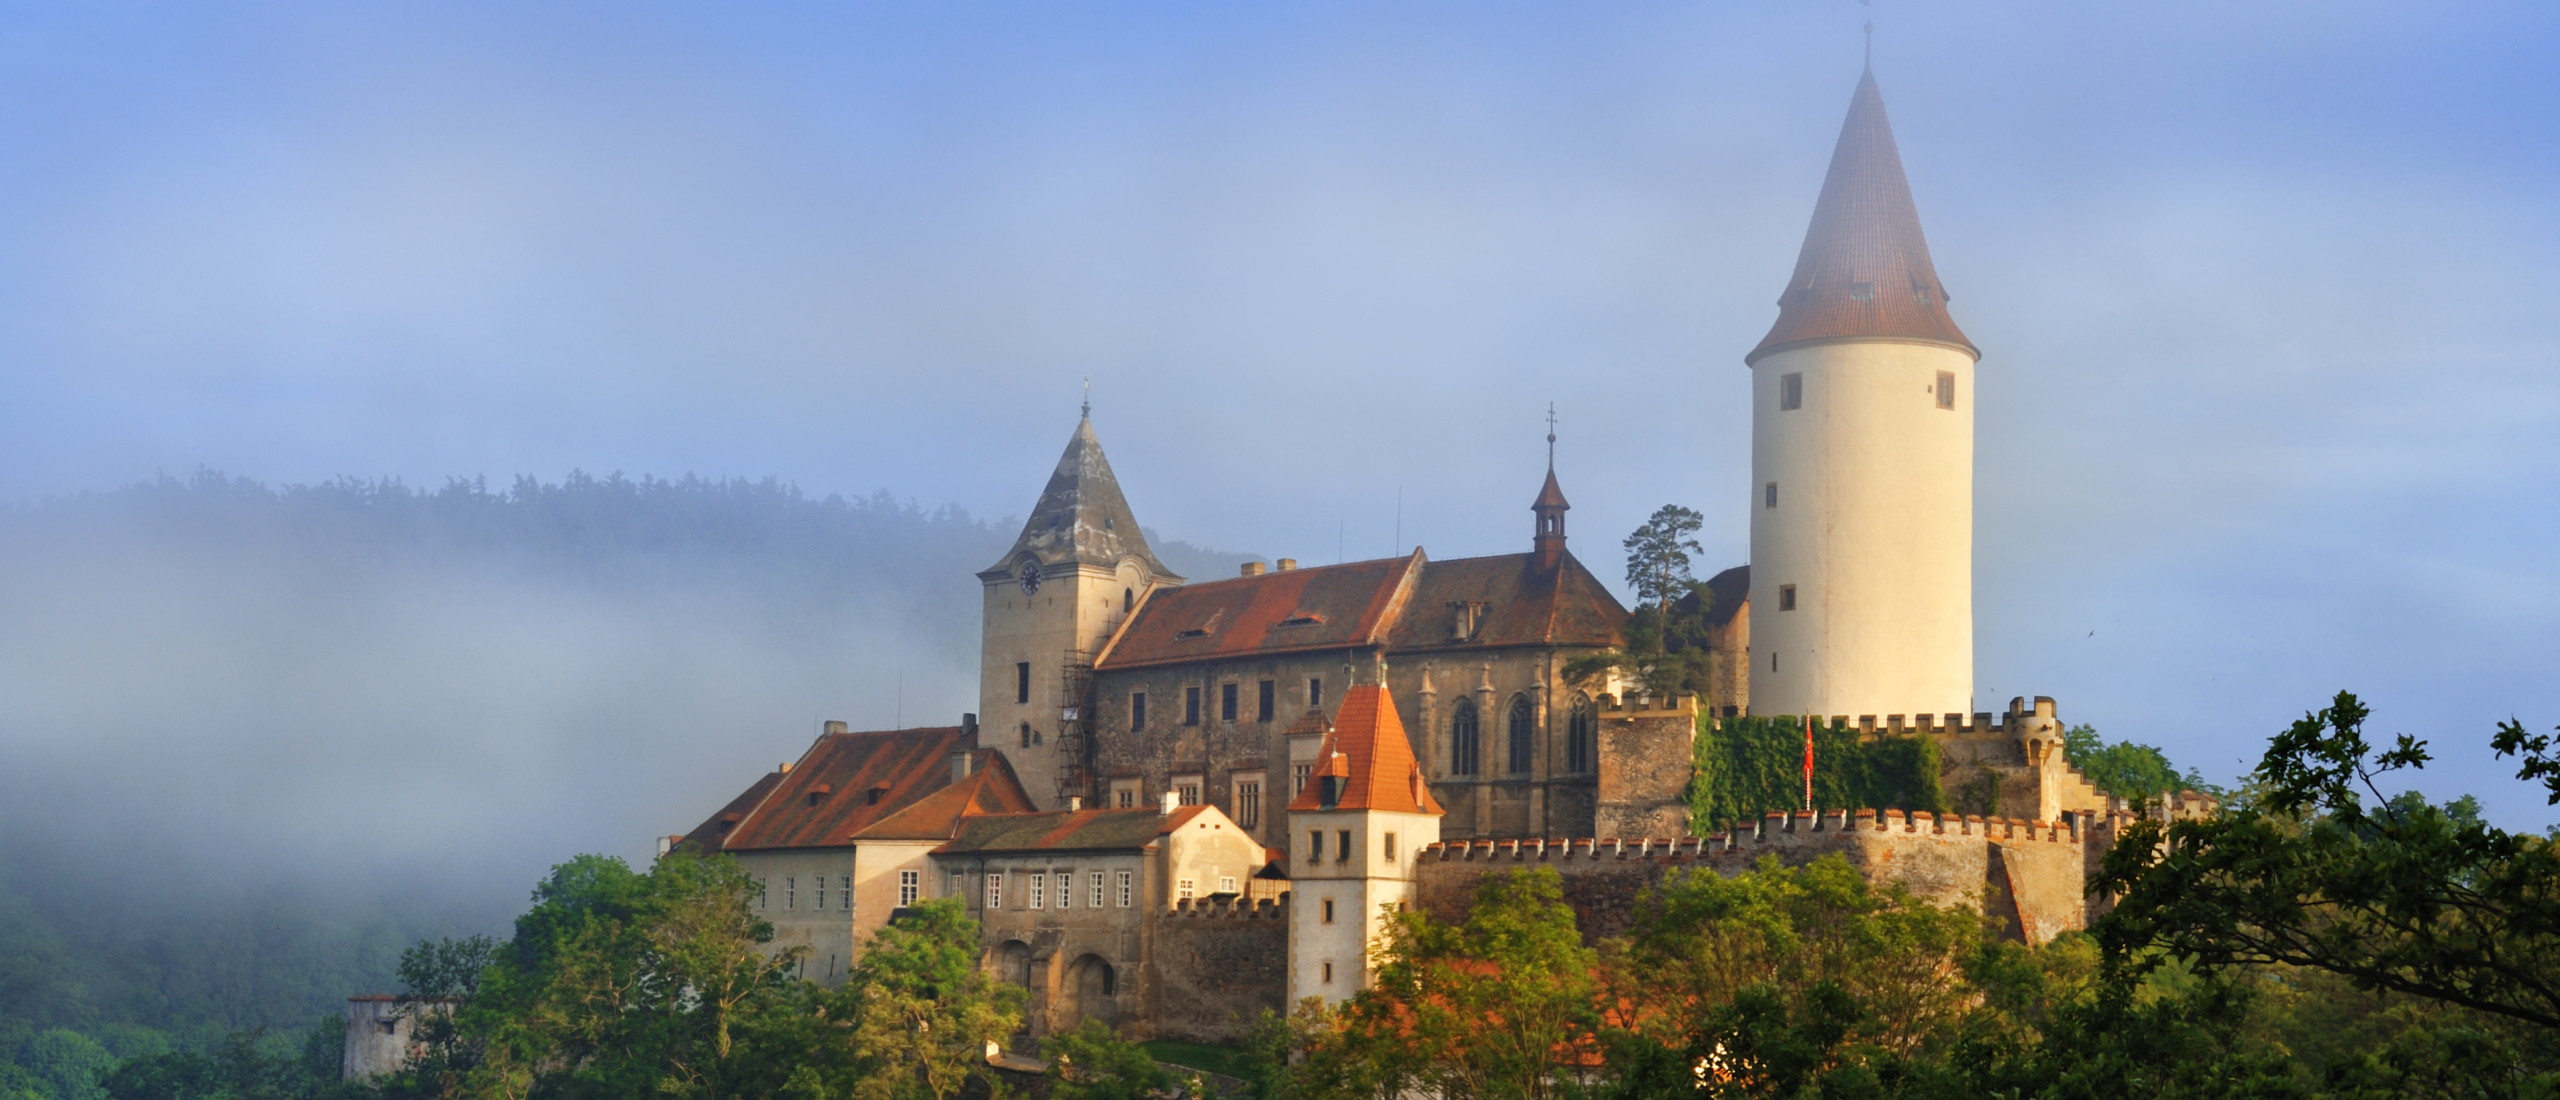 Die schönste Autoroute Tschechiens: Vorbei an böhmischen Burgen und Schlössern auf der Burgenstraße